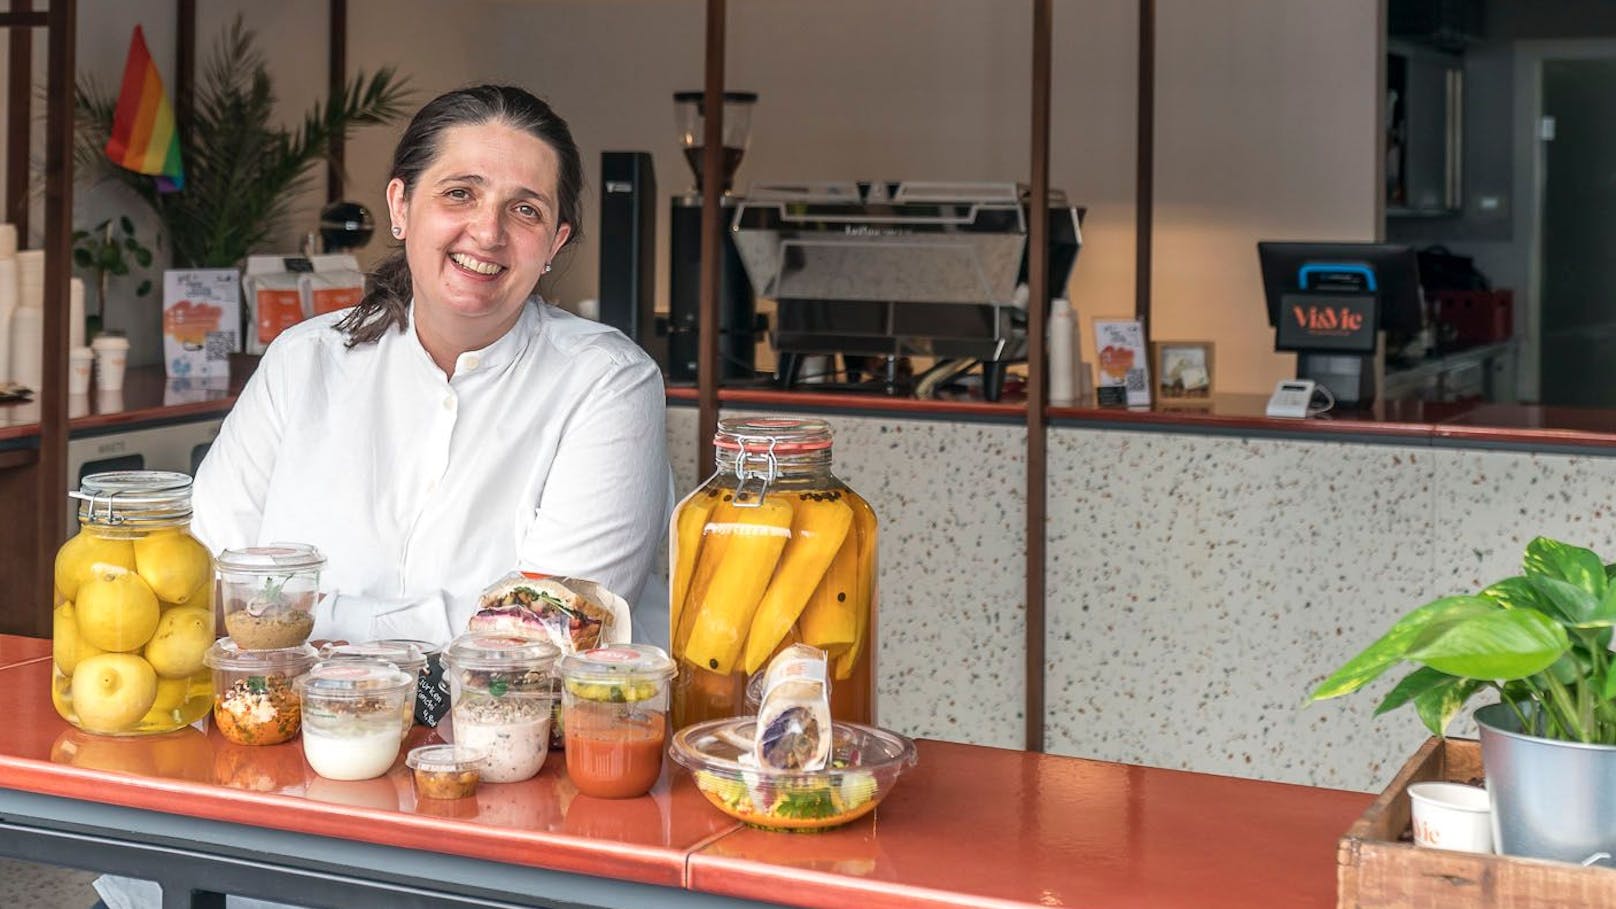 Claudia Kortic aus Tirol ist von einer lebenslangen Weltreise mit tausenden Rezepten heimgekehrt - nun verköstigt sie eilige Foodies in der Landstraße